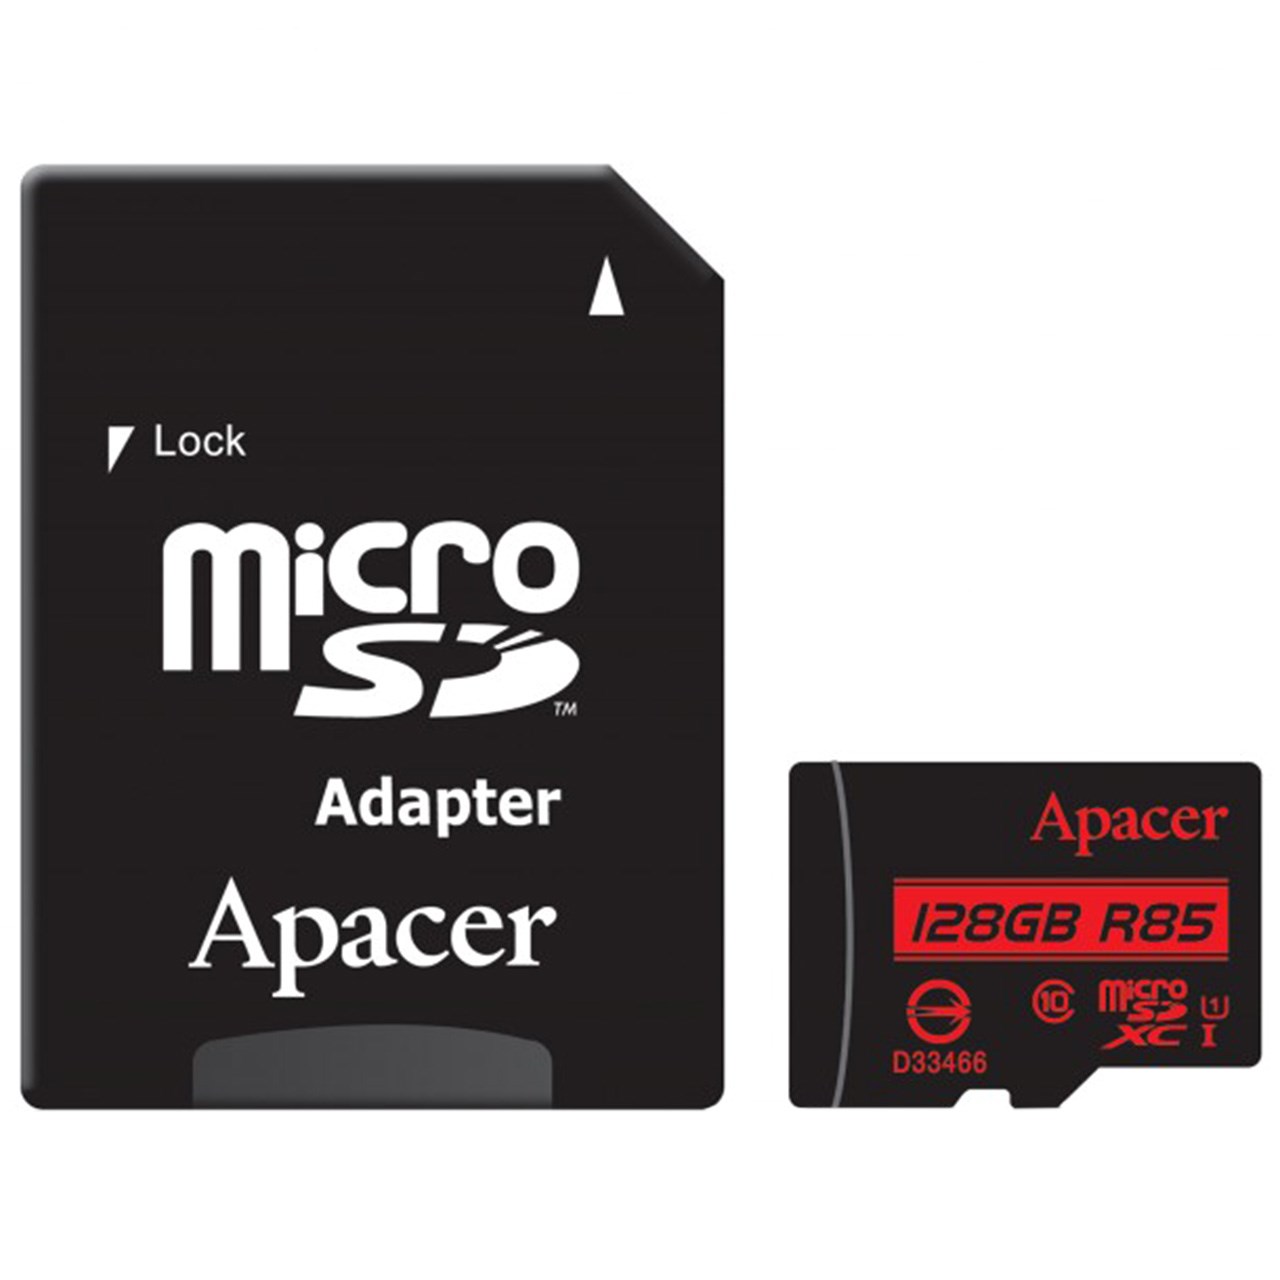 کارت حافظه microSDXC اپیسر 128GB کلاس 10 سرعت 85MBps با آداپتور SD